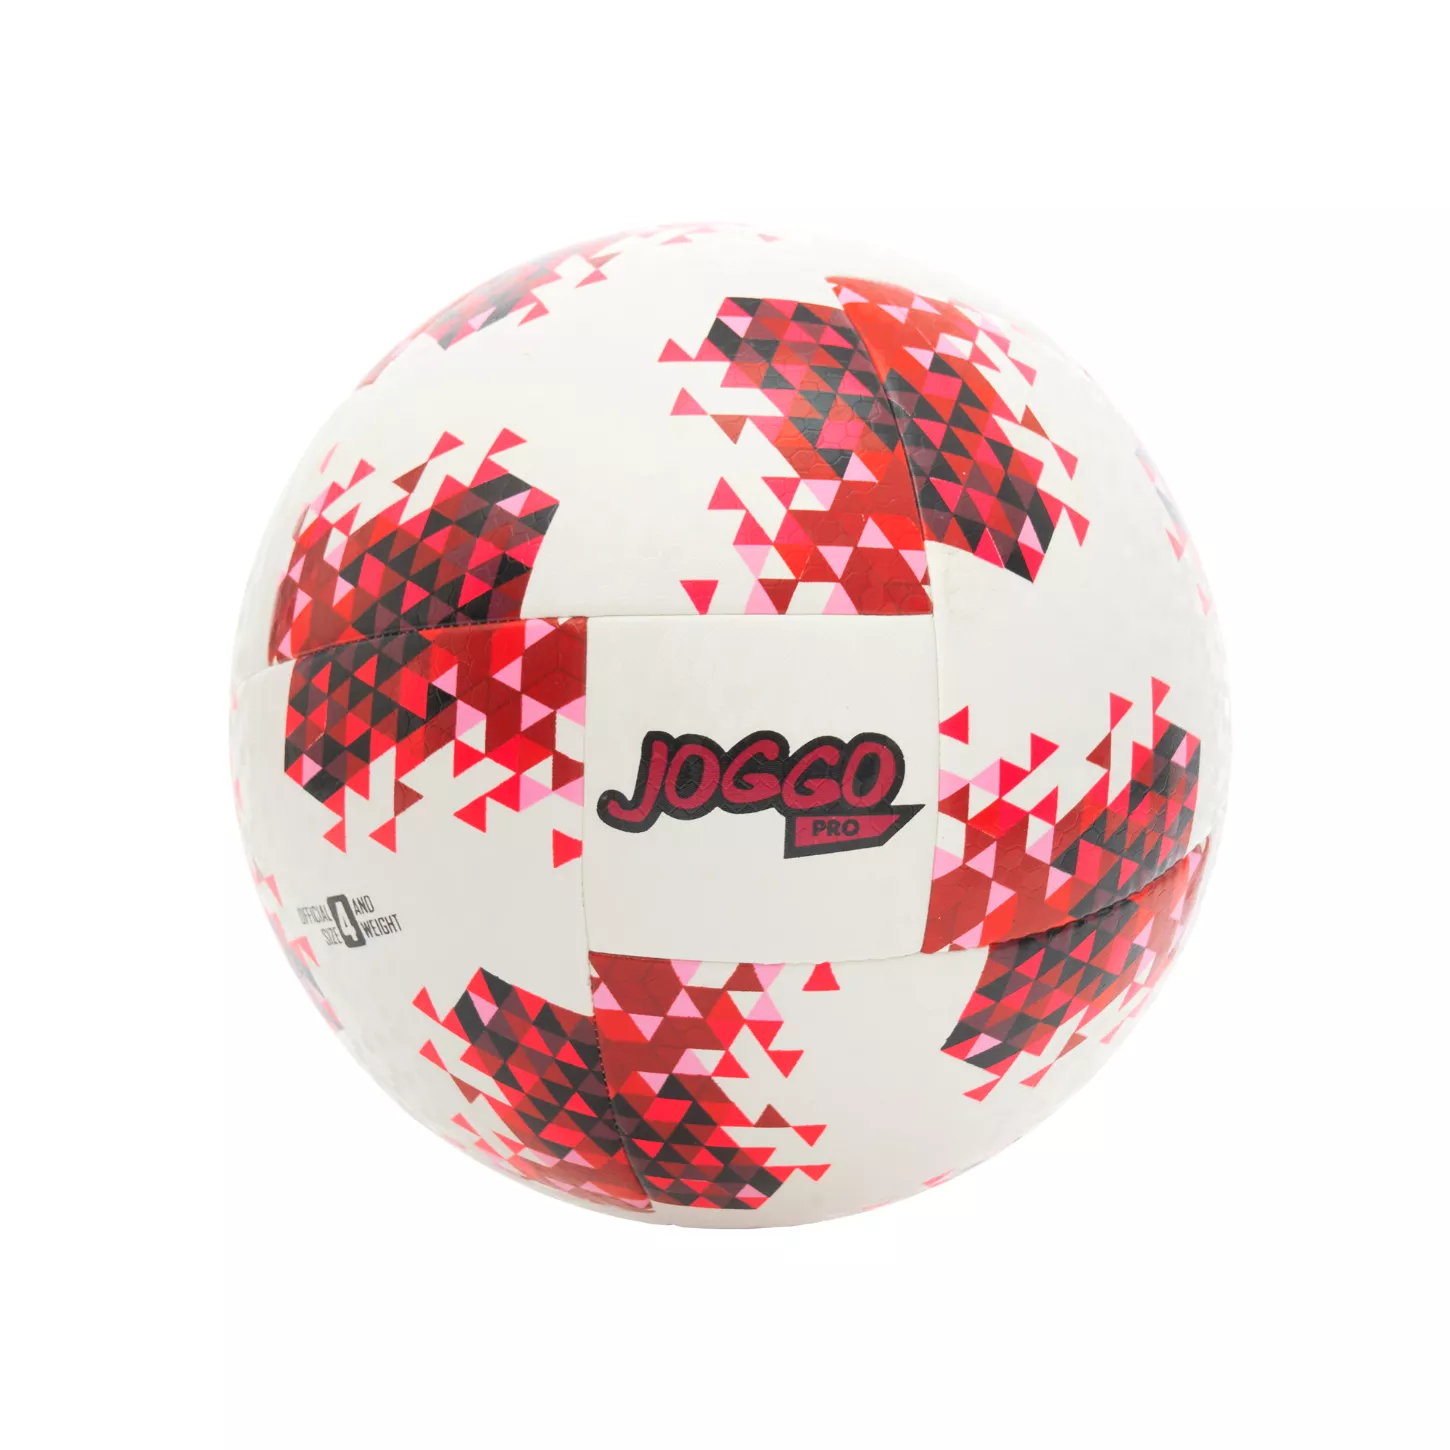 JOGGO PRO Balón oficial de futsal tamaño 4 IS-22-37